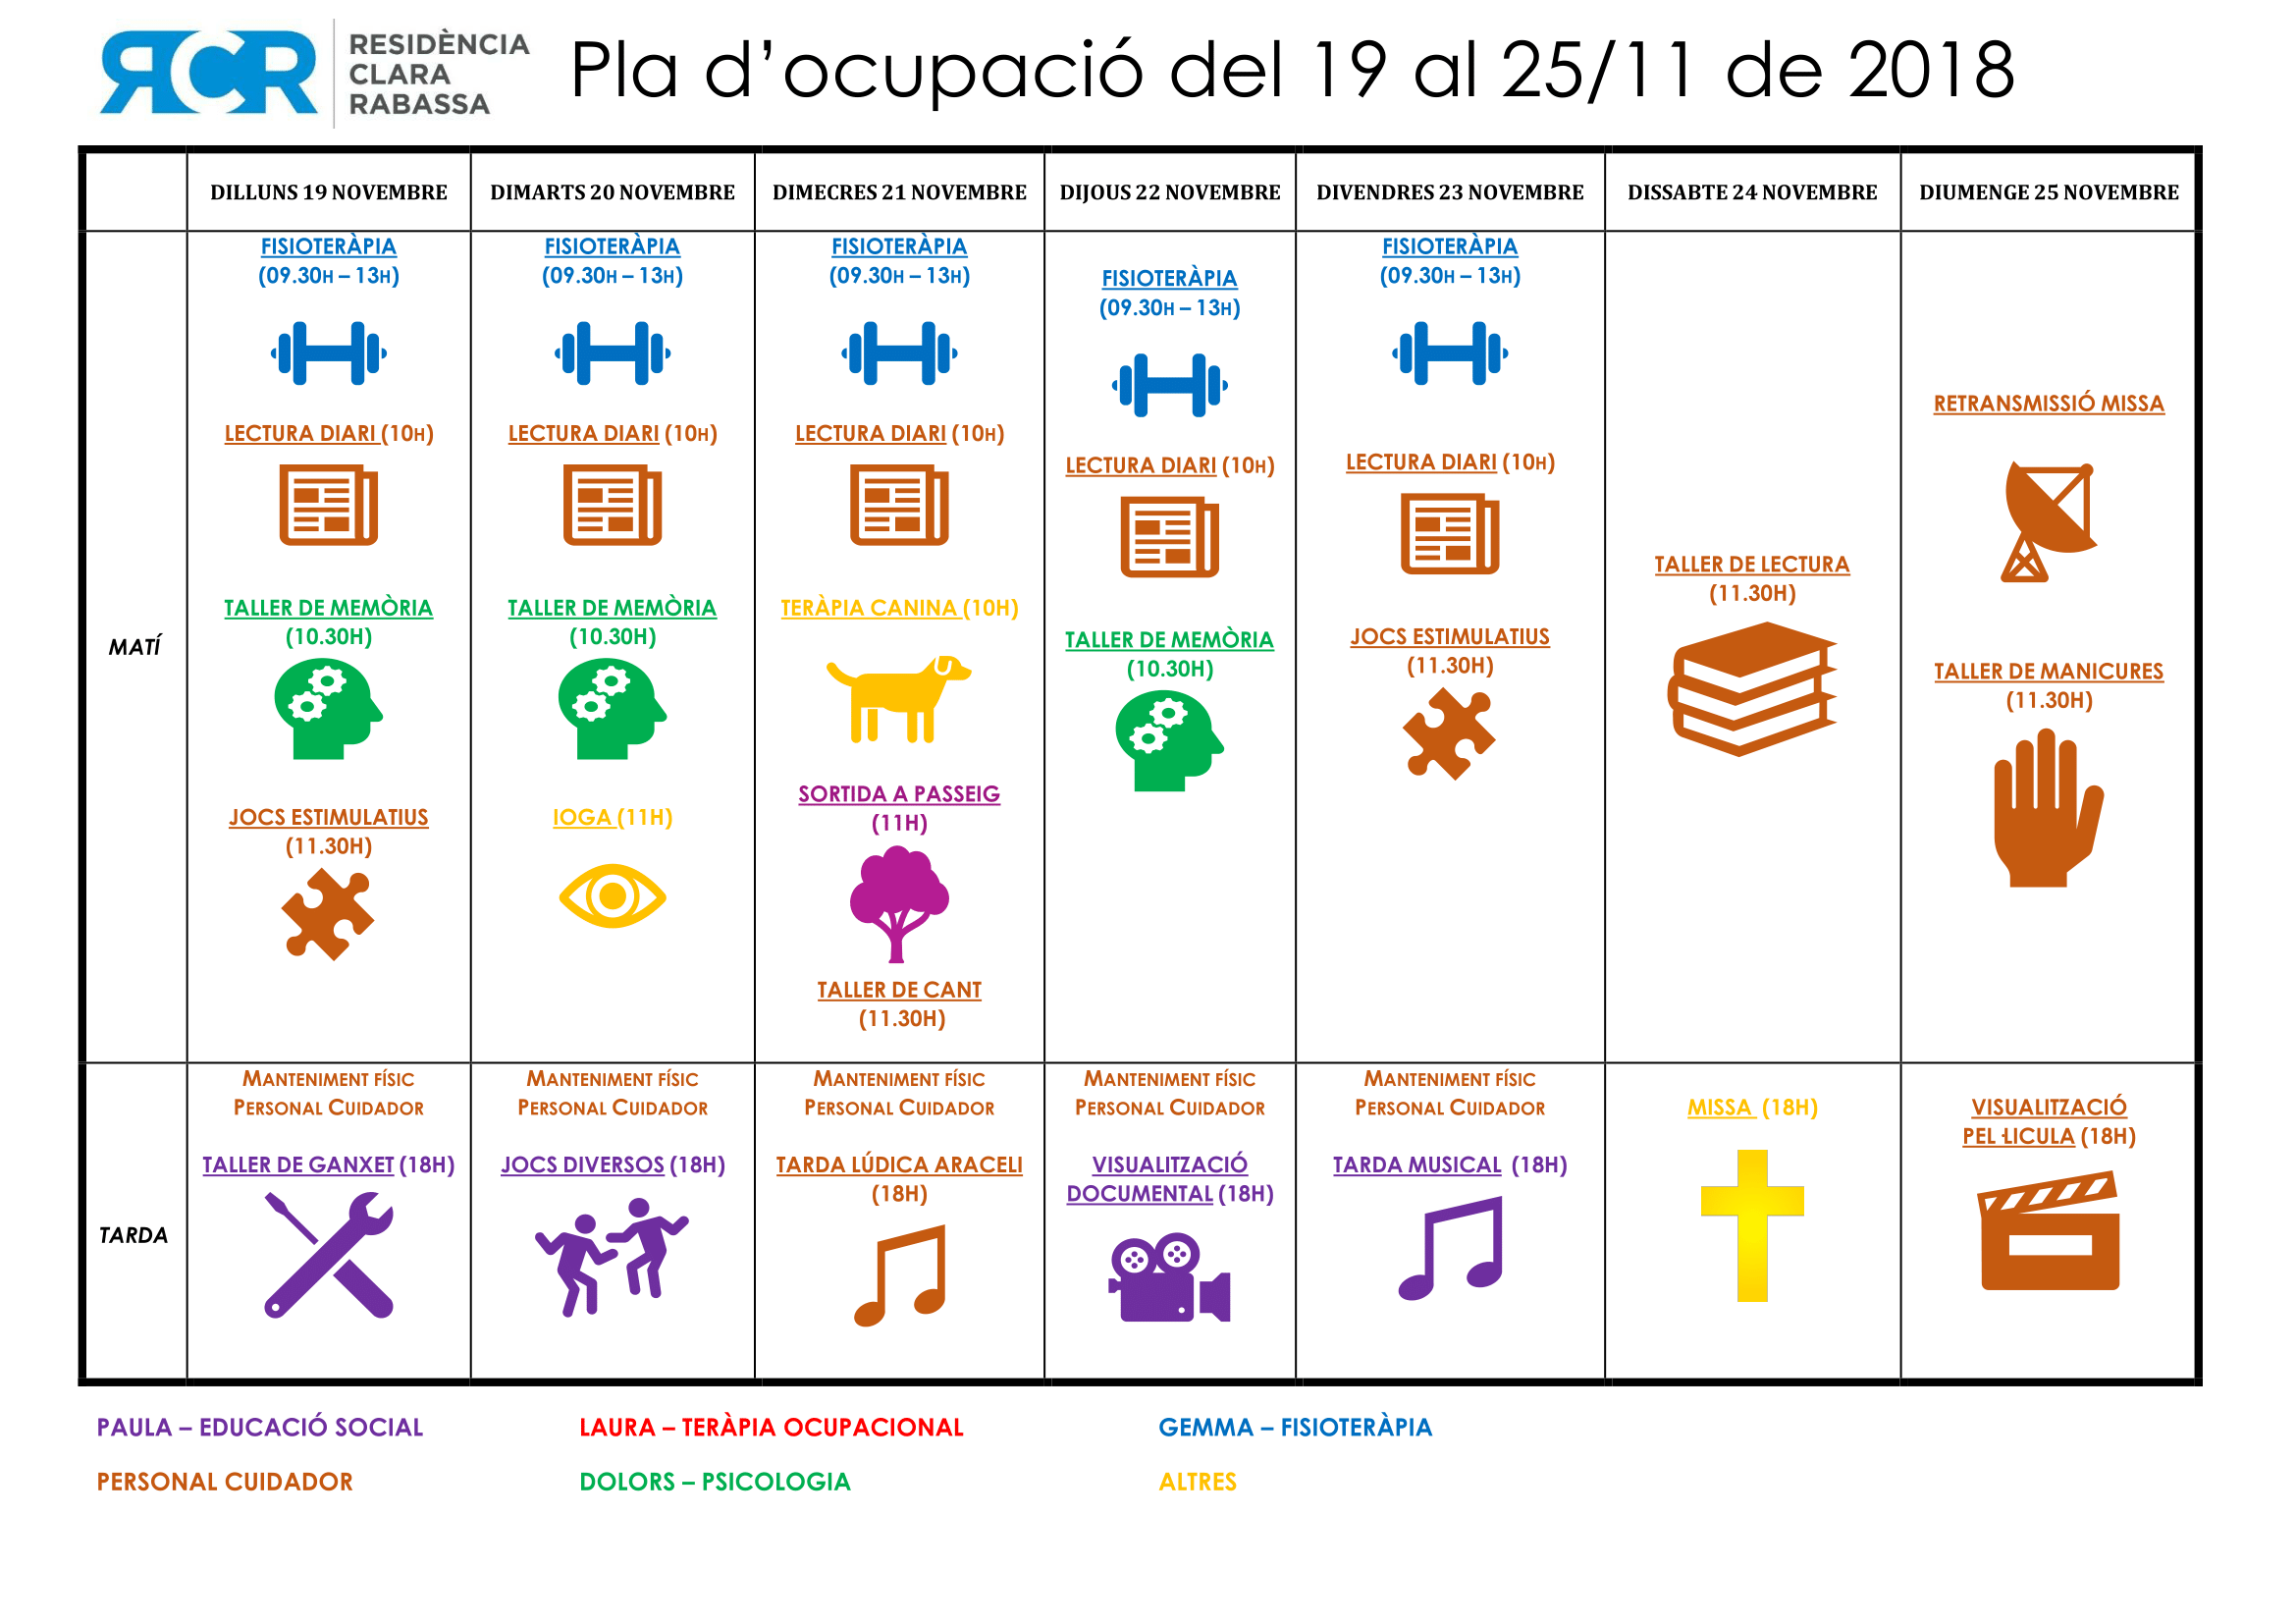 PLA D’OCUPACIÓ DEL 19 AL 25 DE NOVEMBRE DE 2018